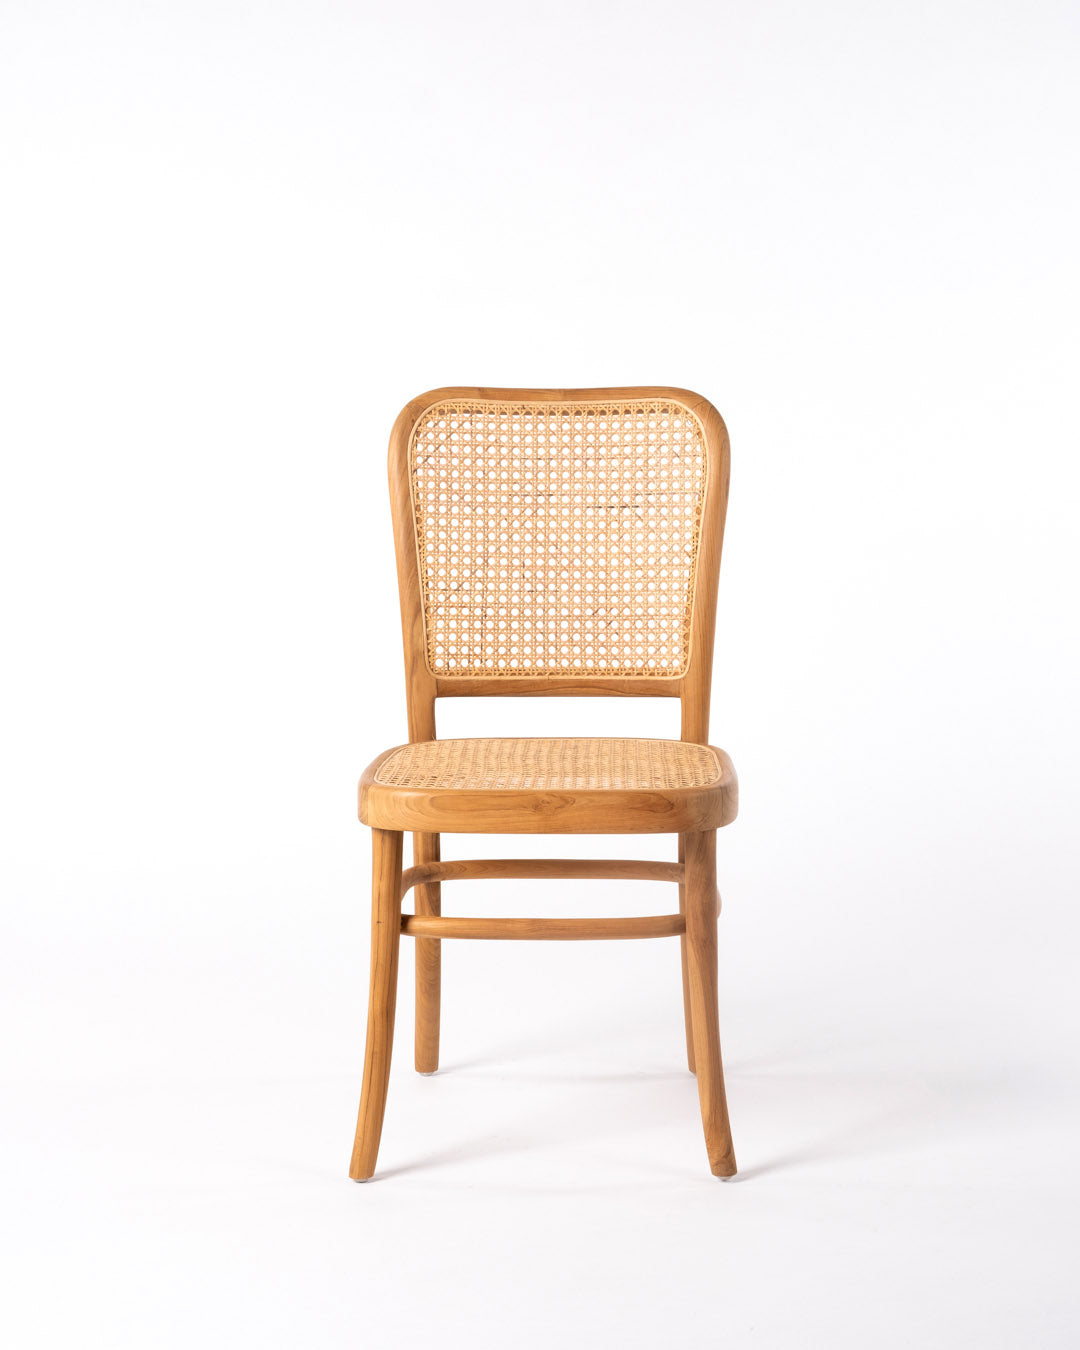 Ternate teak chair